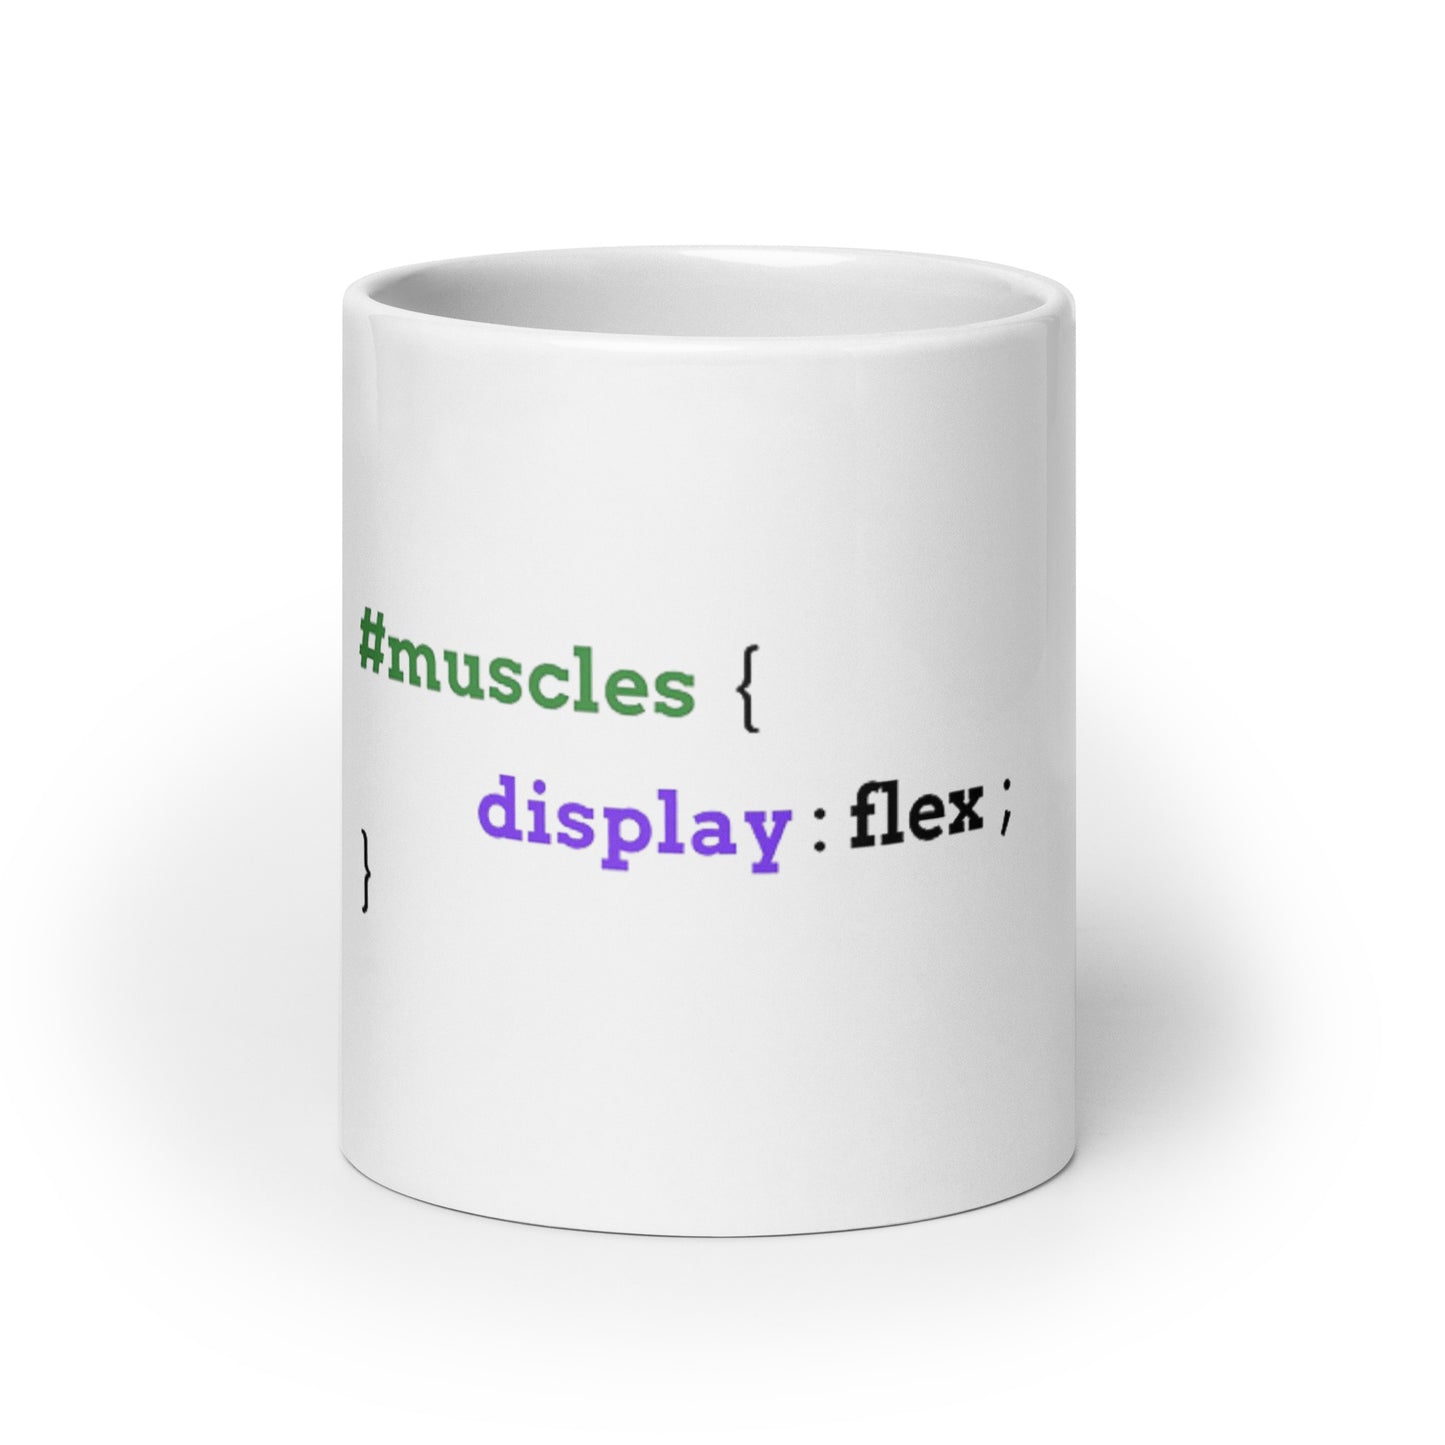 Muscles glossy mug